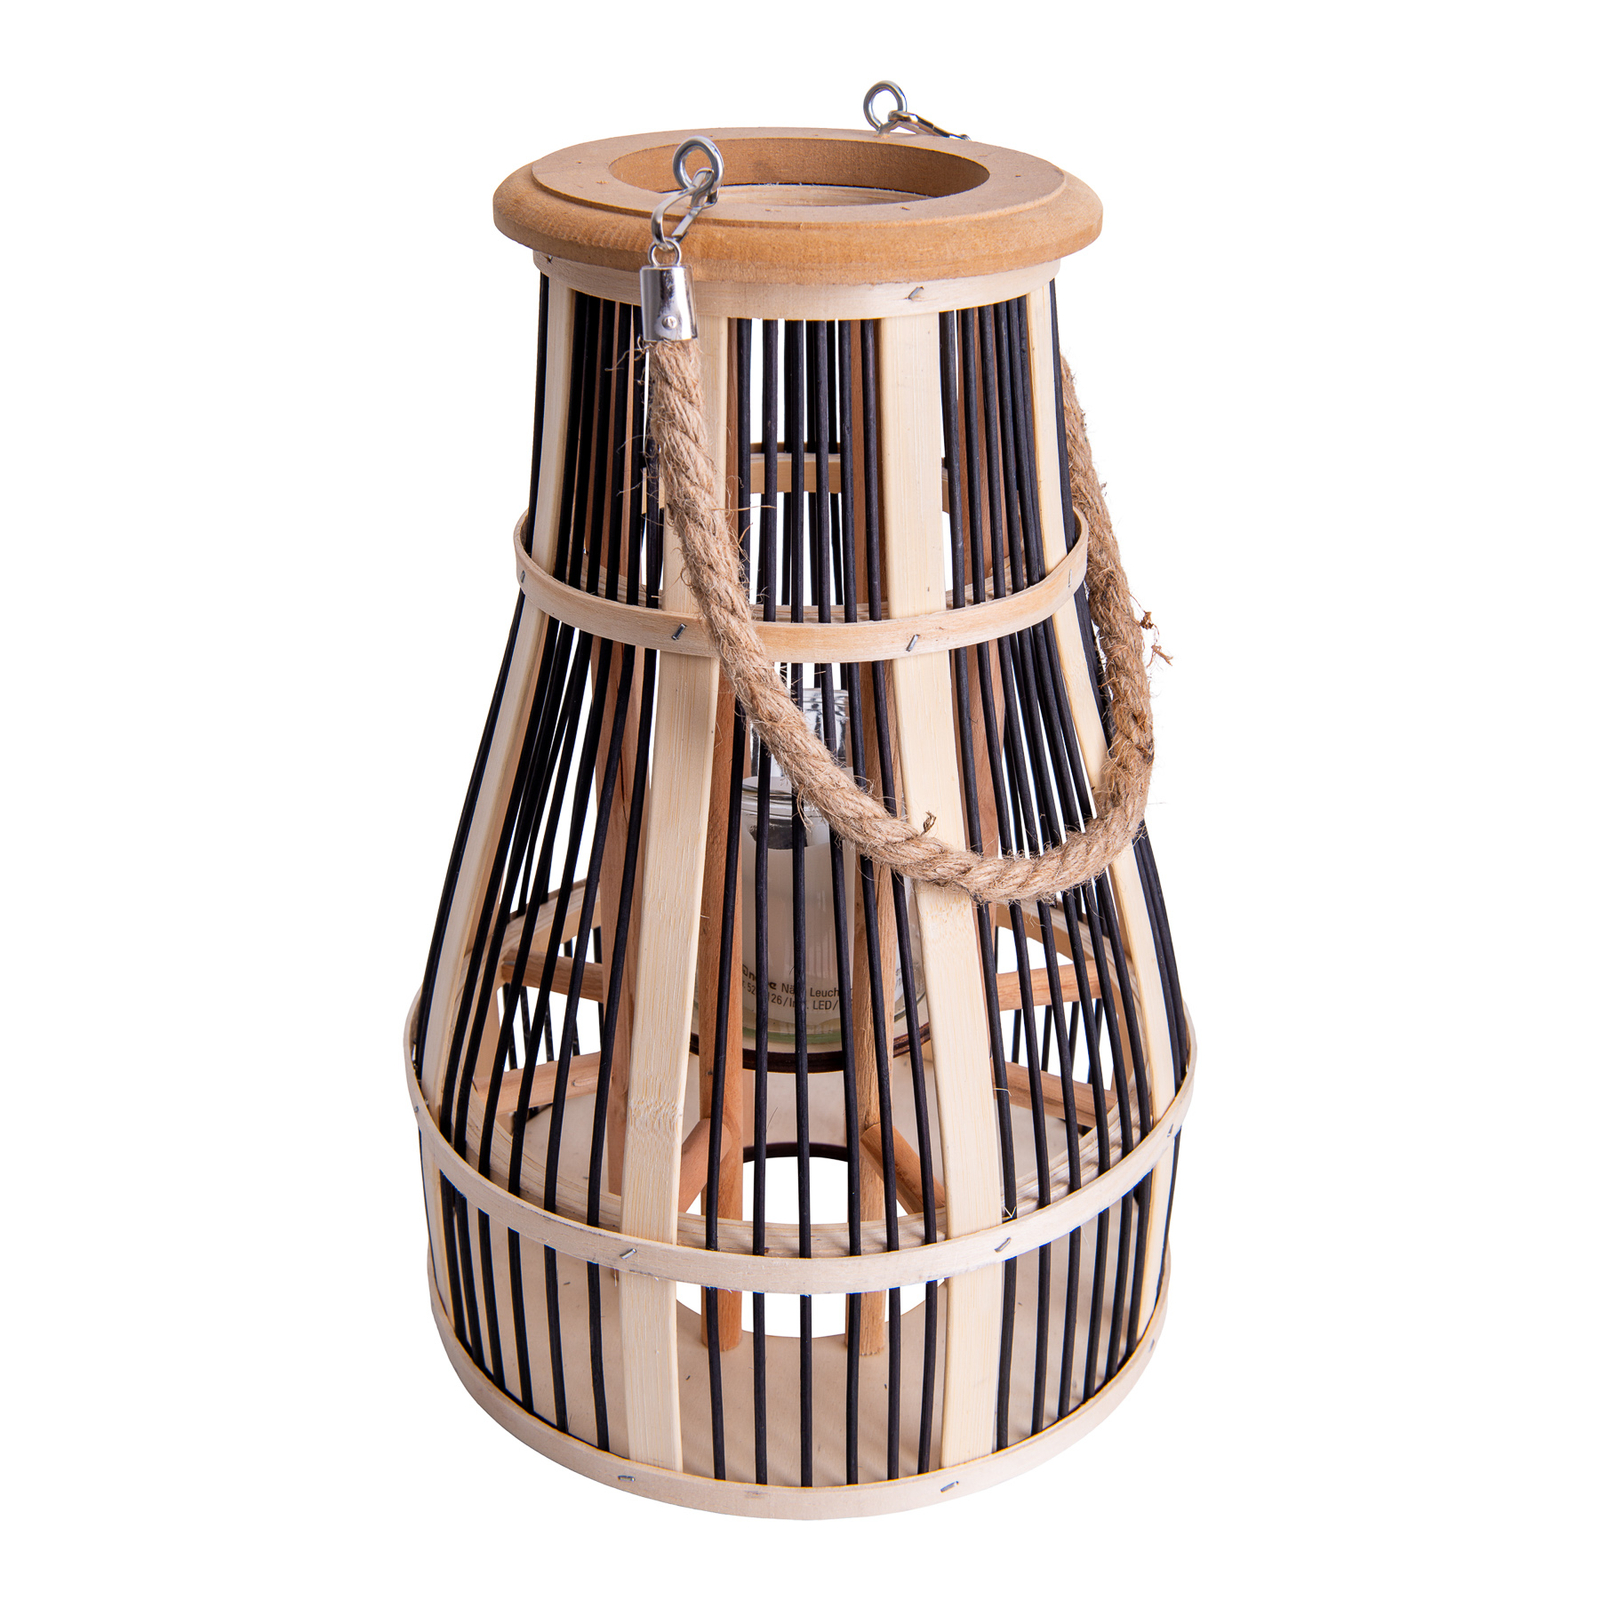 Basket LED solar light, 34 cm, black/natural